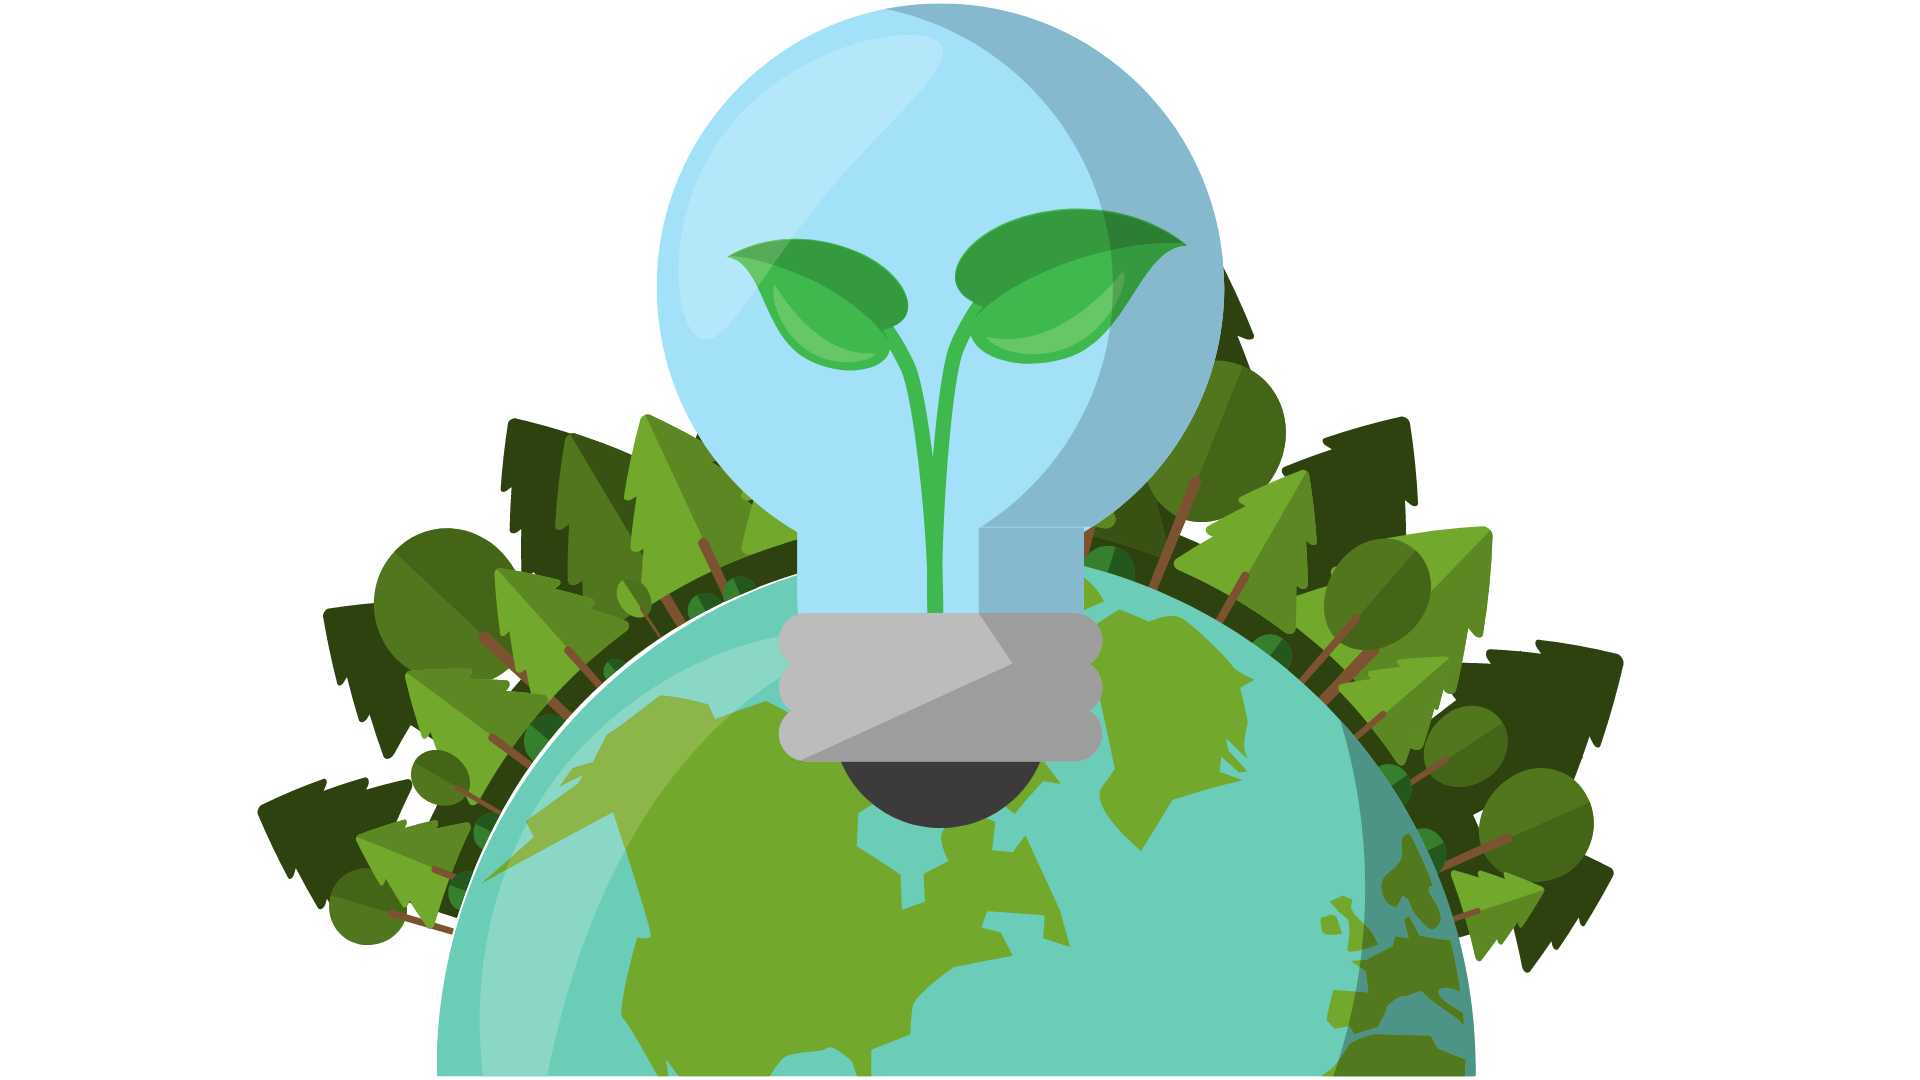 uma lâmpada transparente com uma planta brotando dentro dela, sobreposta a um globo terrestre cercado por folhas verdes, simbolizando energia sustentável ou ideias ecológicas.